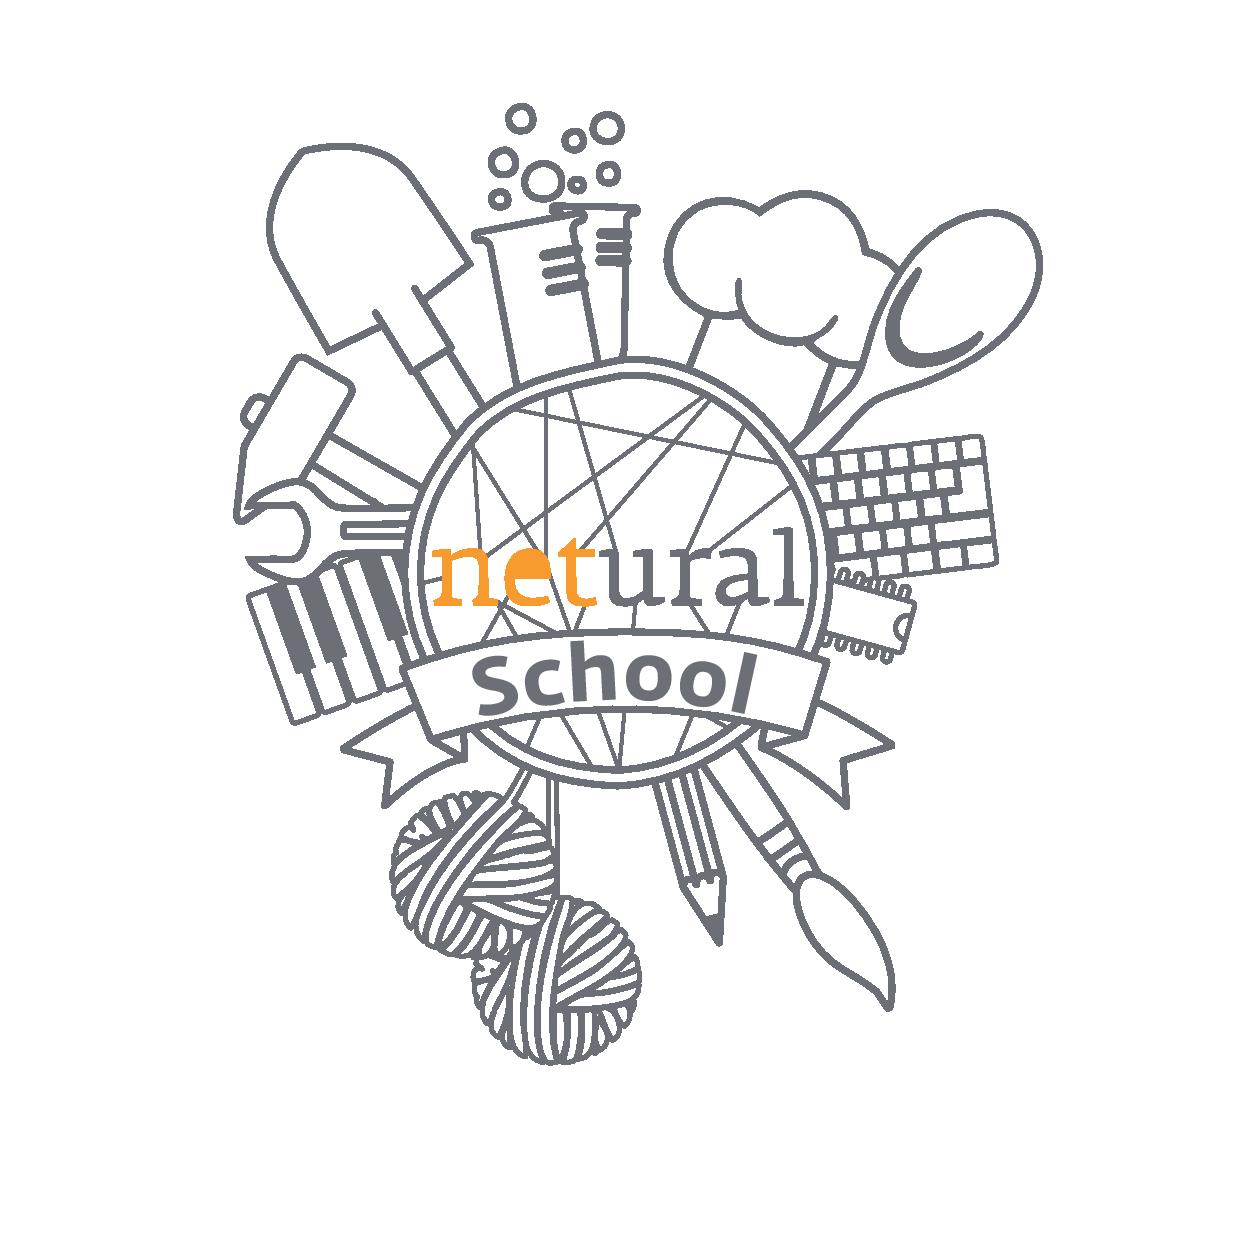 netural school logo copia-page-001